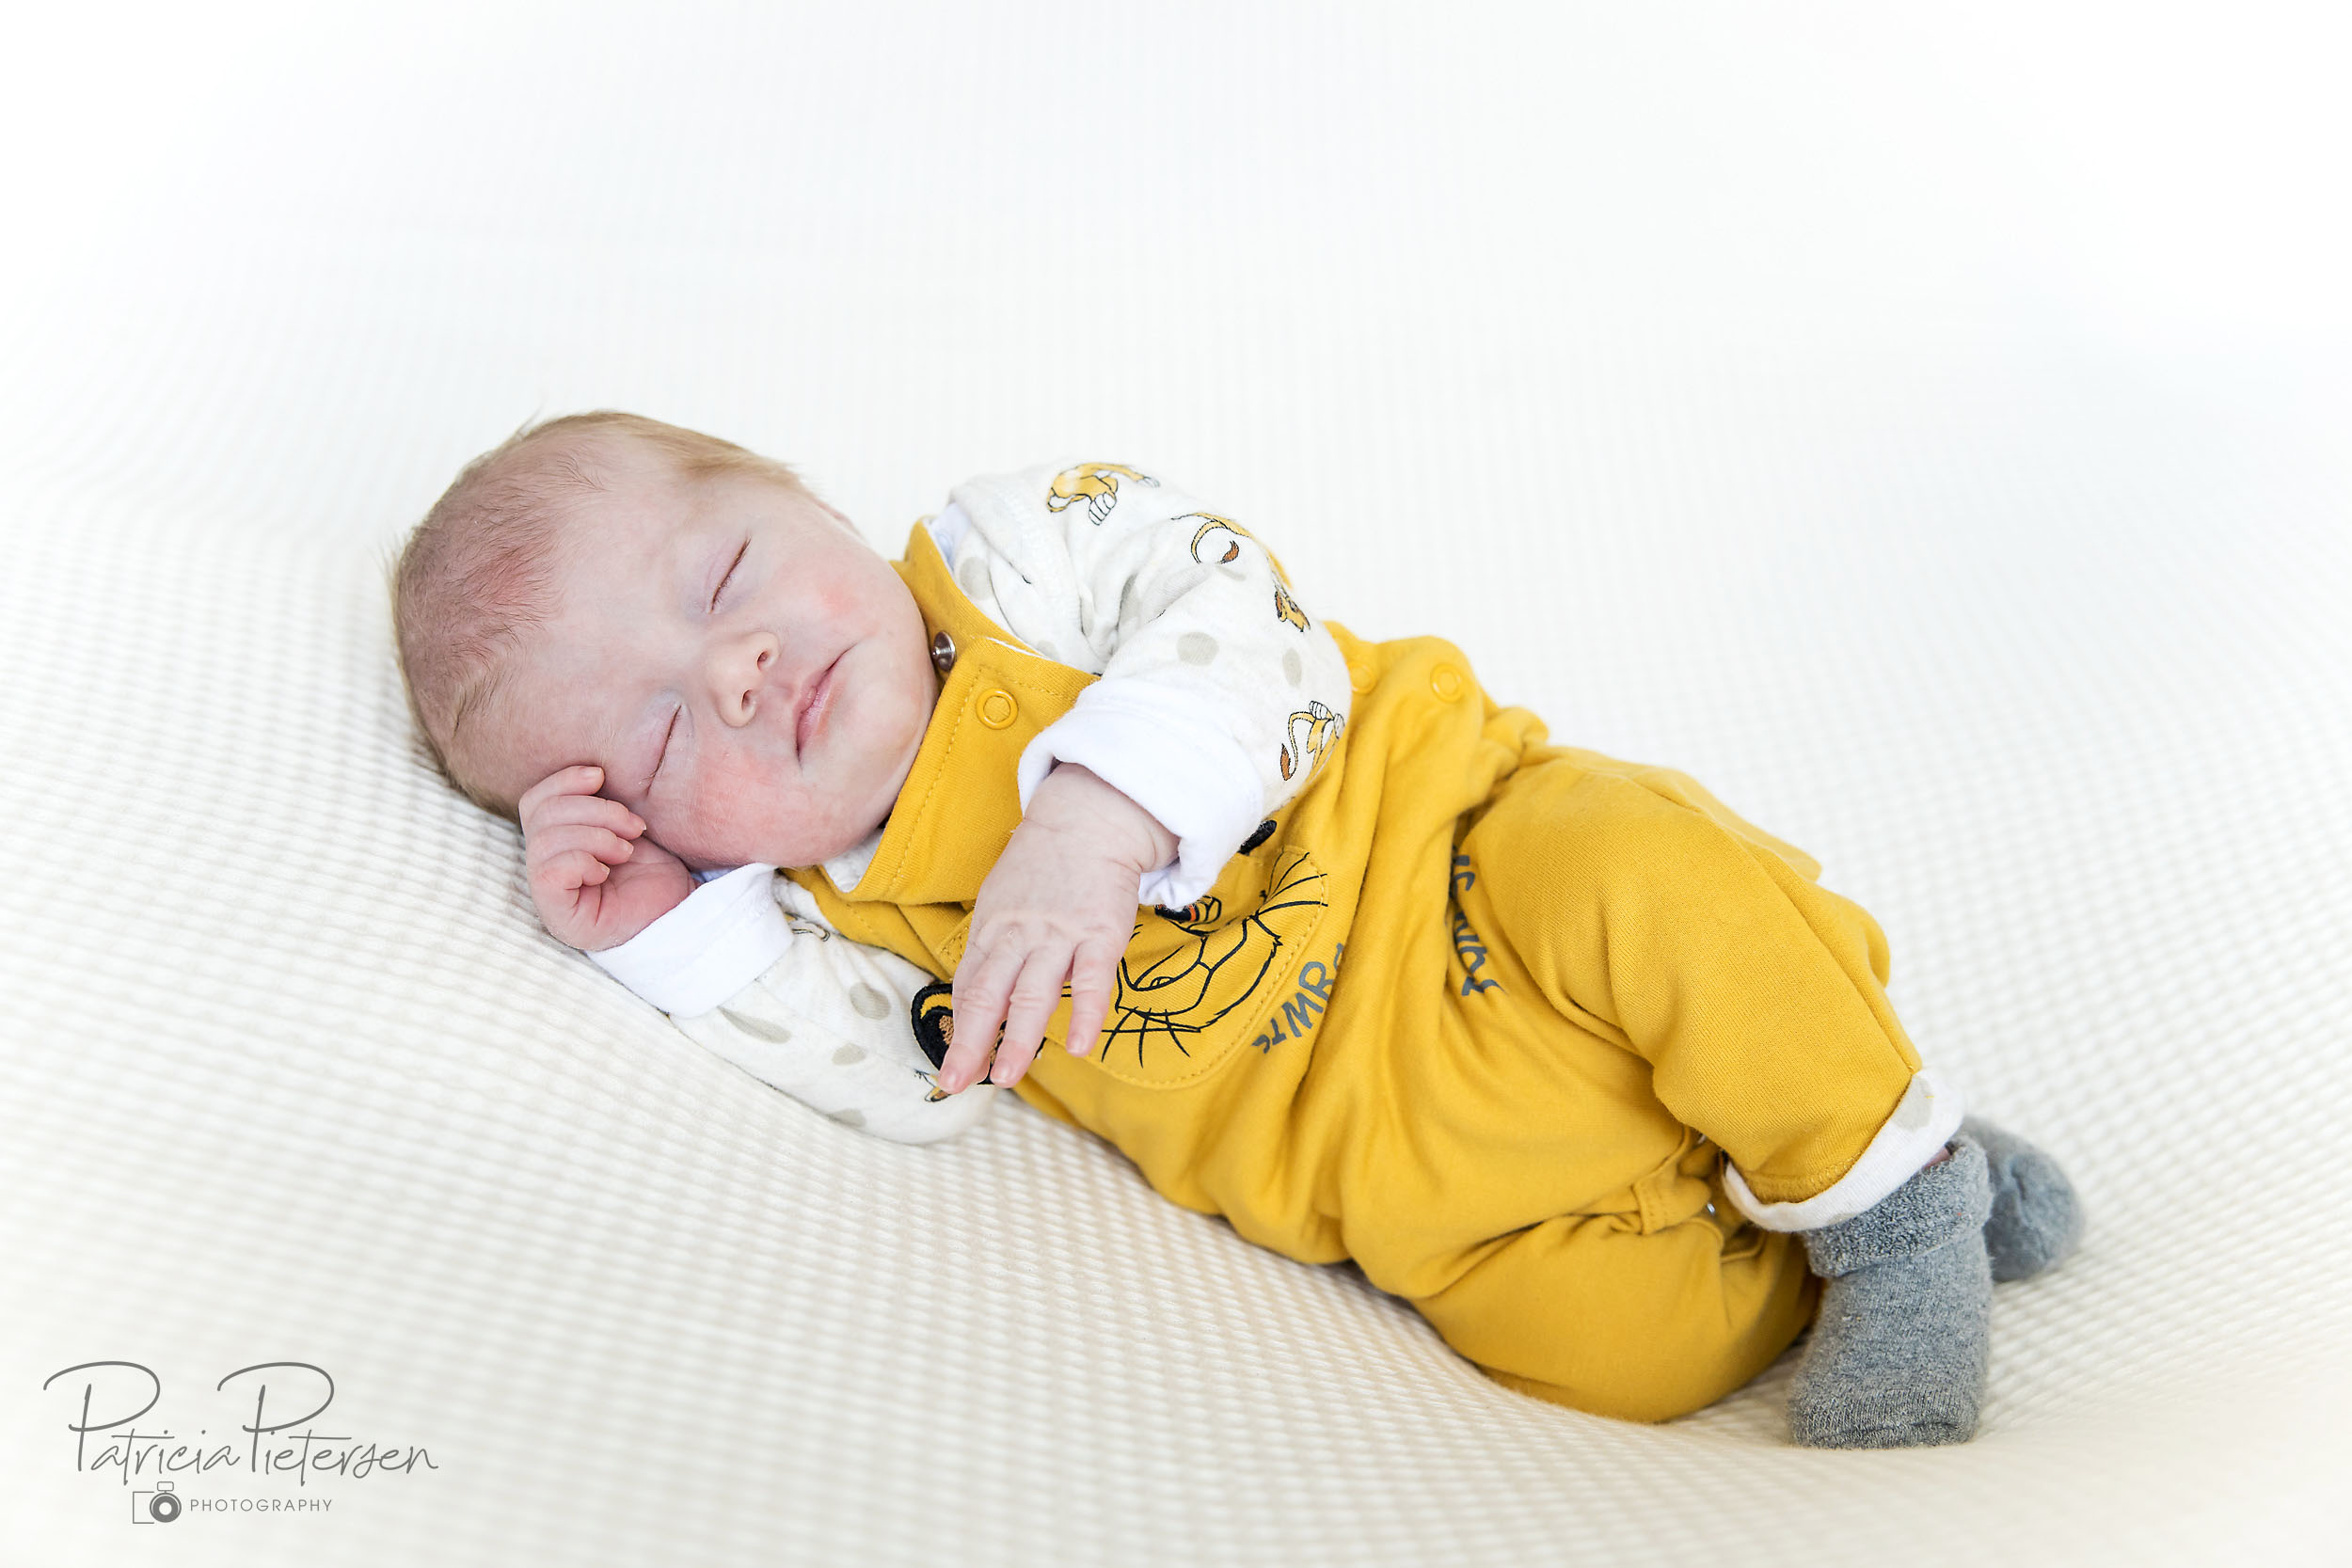 Newbornfotografie Babyfotografie Fotoreportage Familie Baby Newborn Fotografie Fotograaf Lelystad Flevoland Lifestyle Aiden Patricia Pietersen Photography (5)